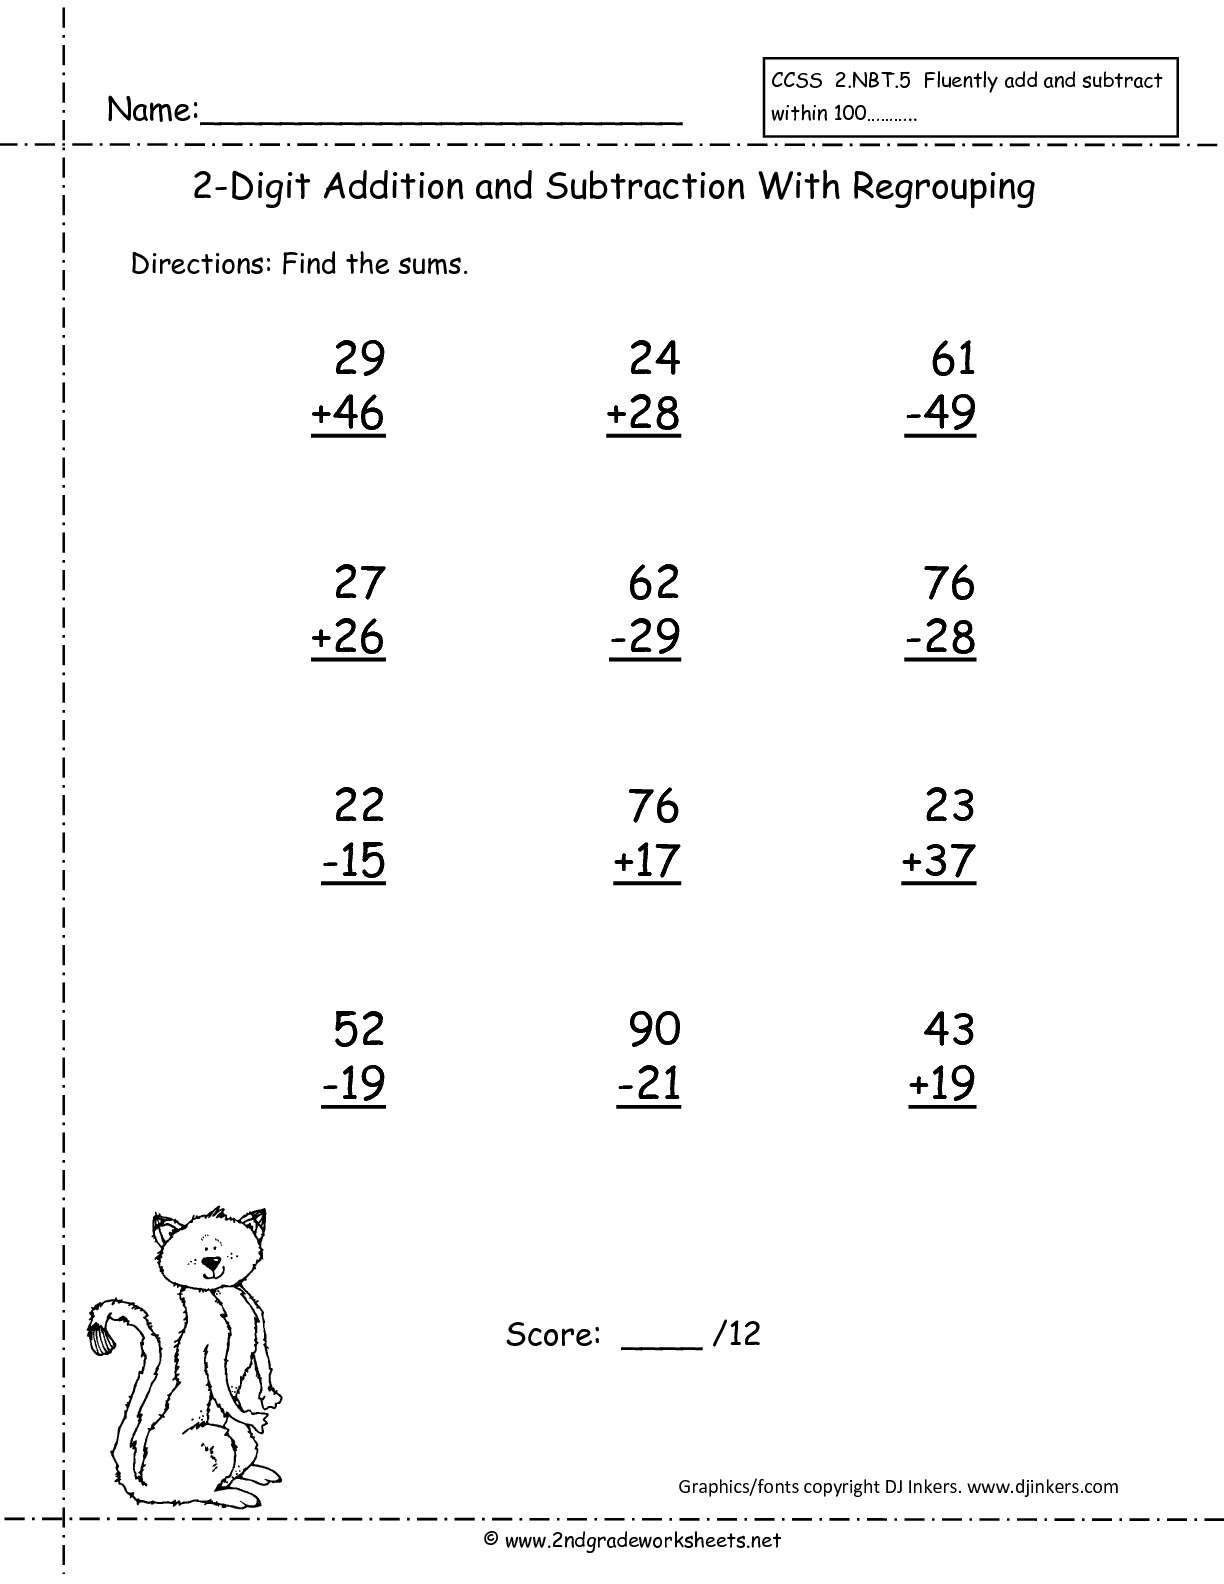 14 Best Images Of Fun Time Management Worksheets 2nd Grade Mental Math Worksheets Life Skills